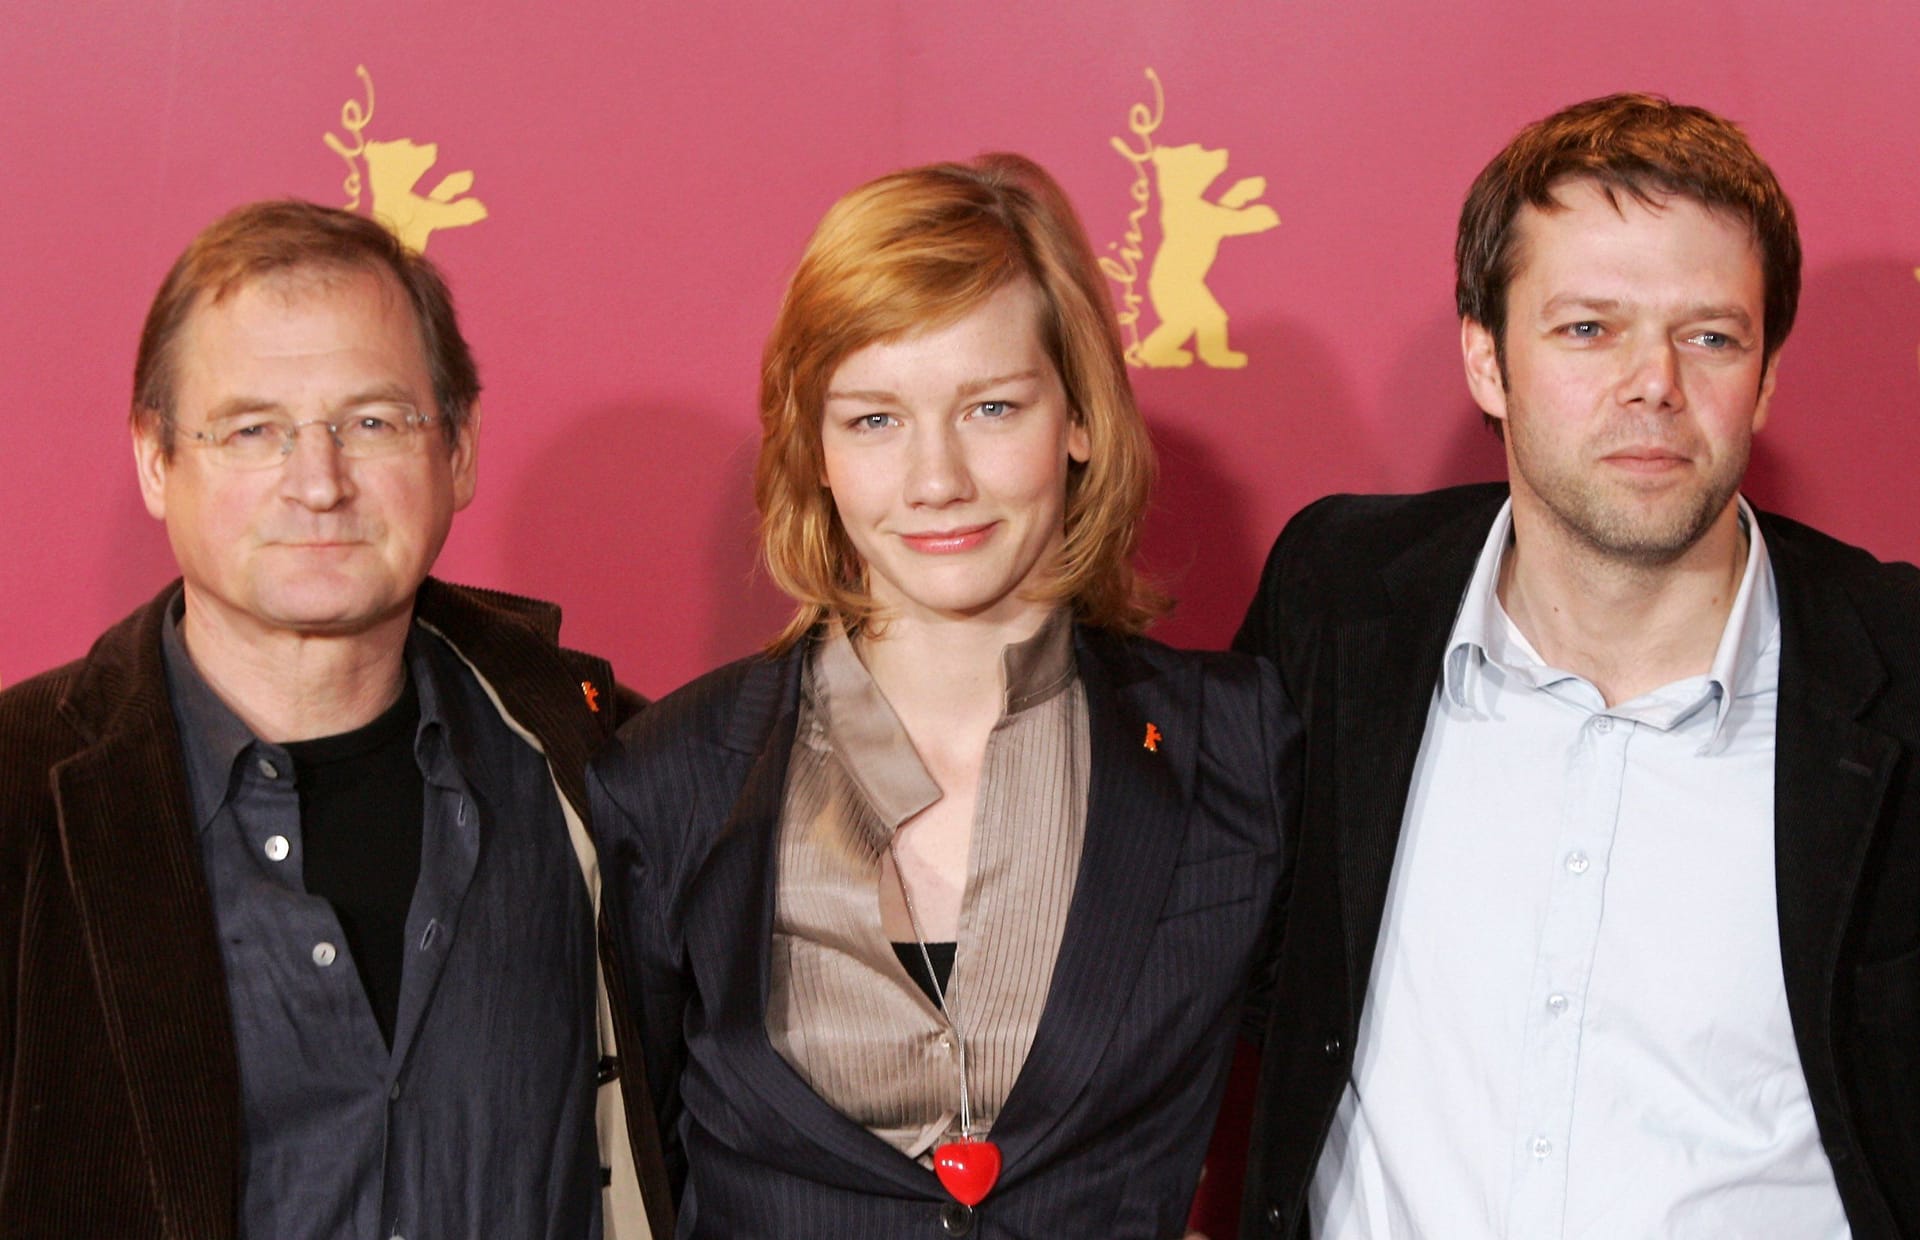 Burghart Klaußner, Sandra Hüller und Hans-Christian Schmid stellen "Requiem" bei der Berlinale vor.